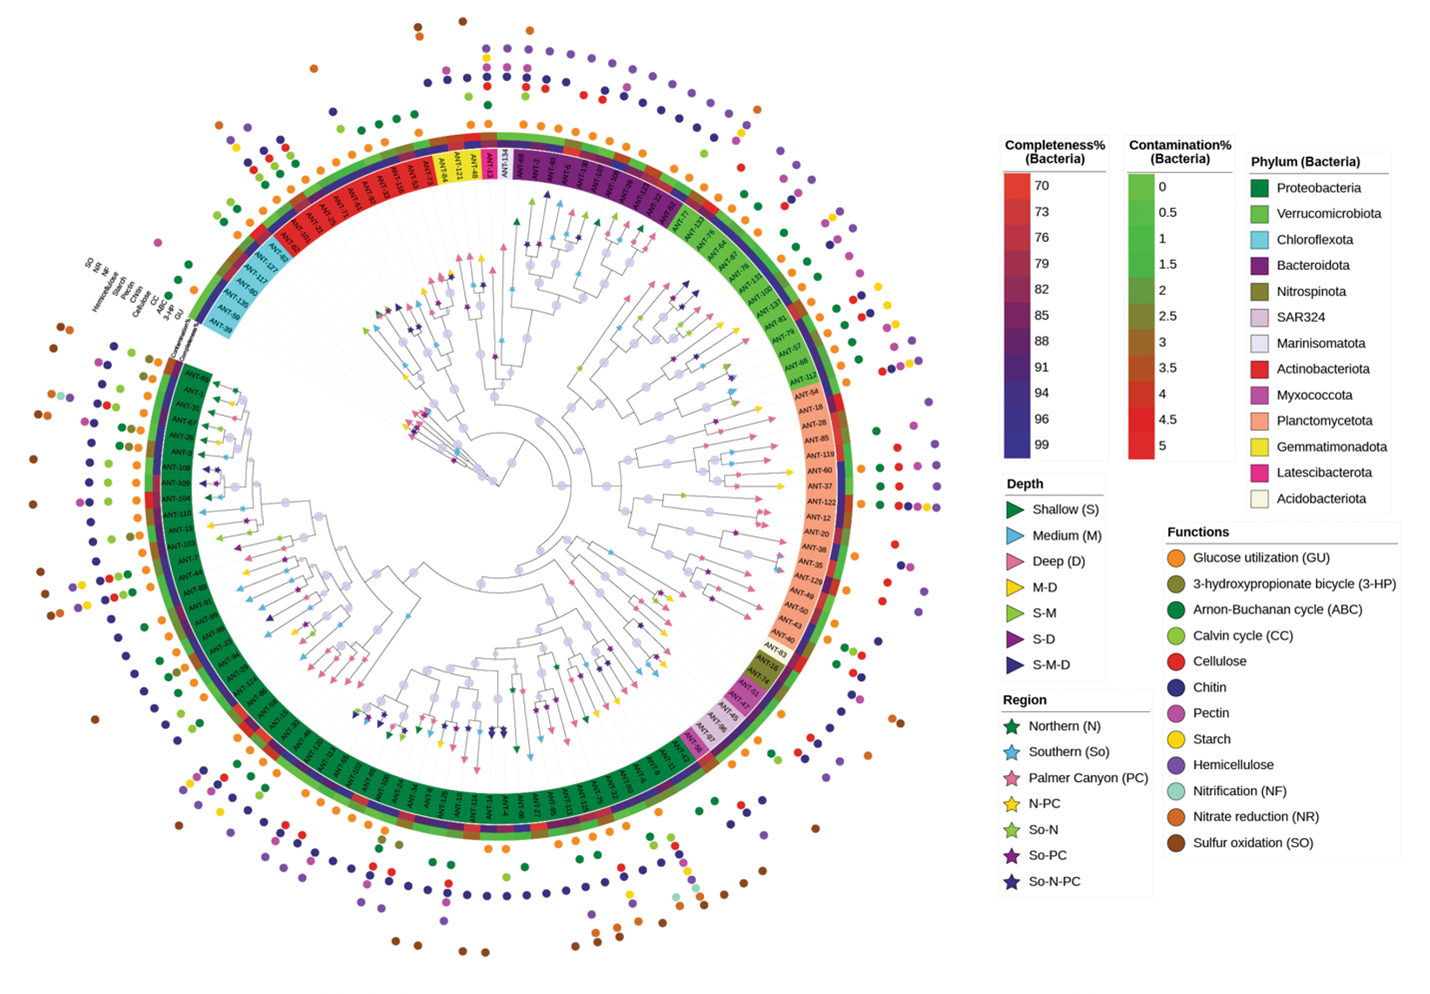 Maximum-likelihood phylogenomic analysis of 137 dereplicated MAGs based on bacterial marker genes from GTDB-Tk analysis